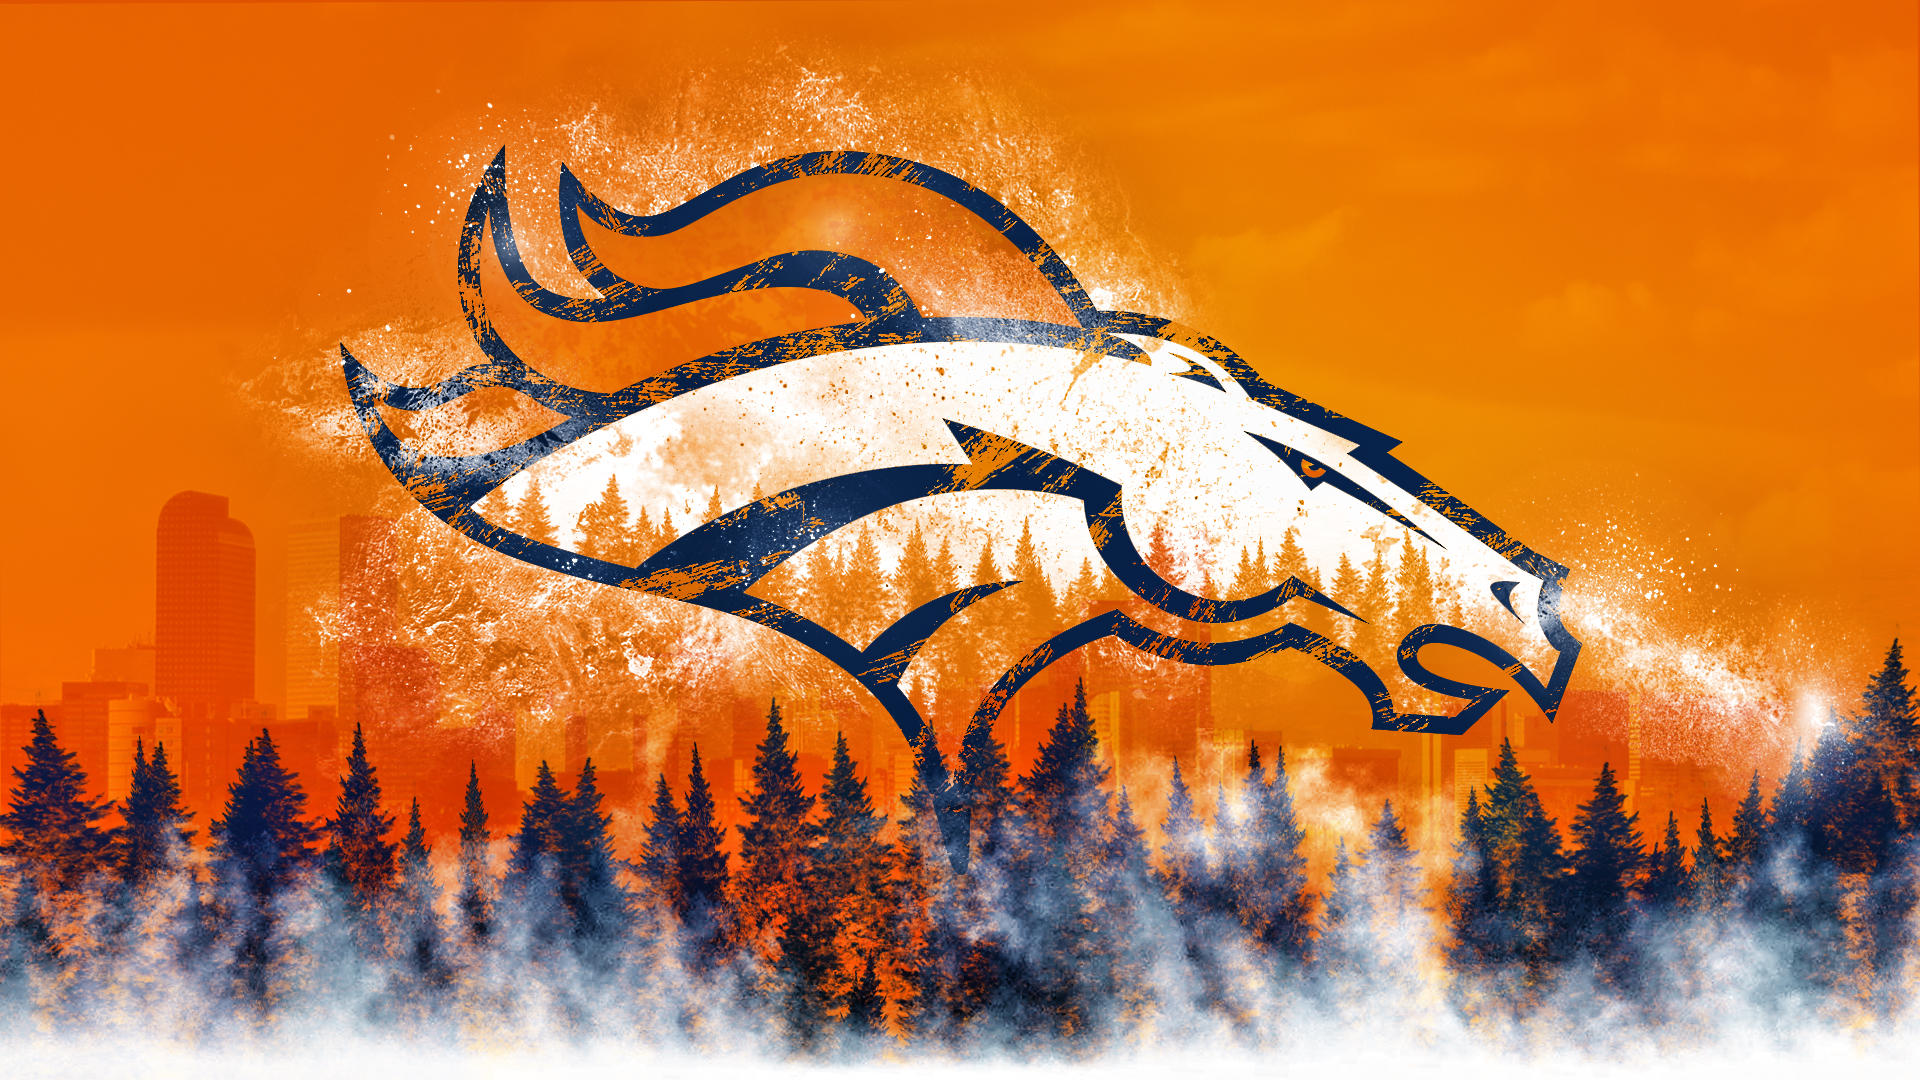 Denver Broncos HD Wallpaper Background Image Id